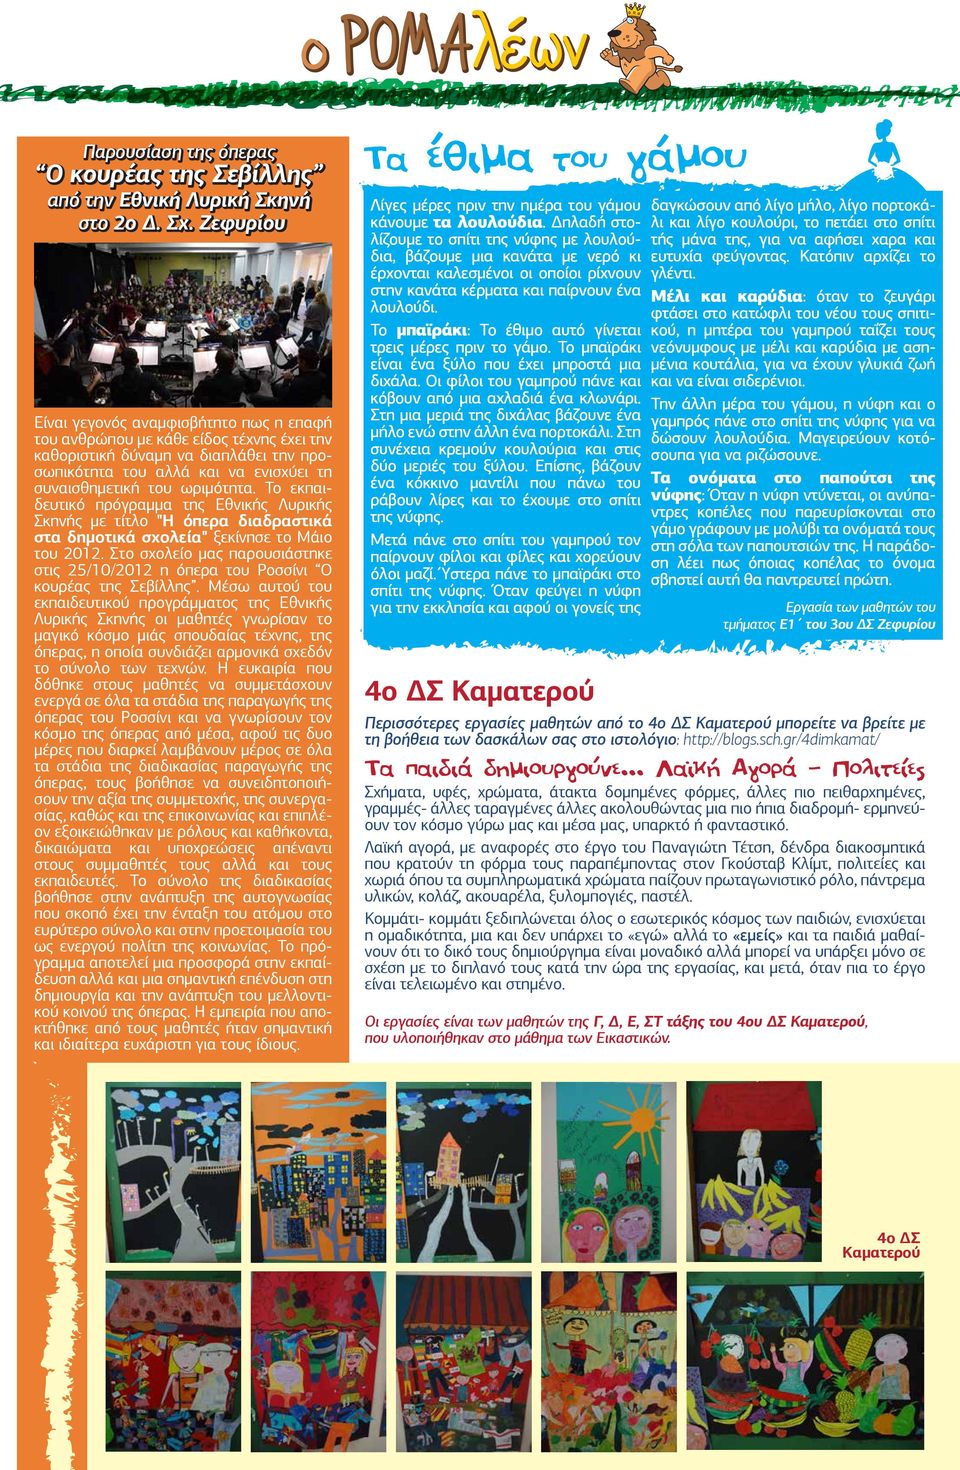 Το εκπαιδευτικό πρόγραµµα της Εθνικής Λυρικής Σκηνής µε τίτλο "Η όπερα διαδραστικά στα δηµοτικά σχολεία" ξεκίνησε το Μάιο του 2012.